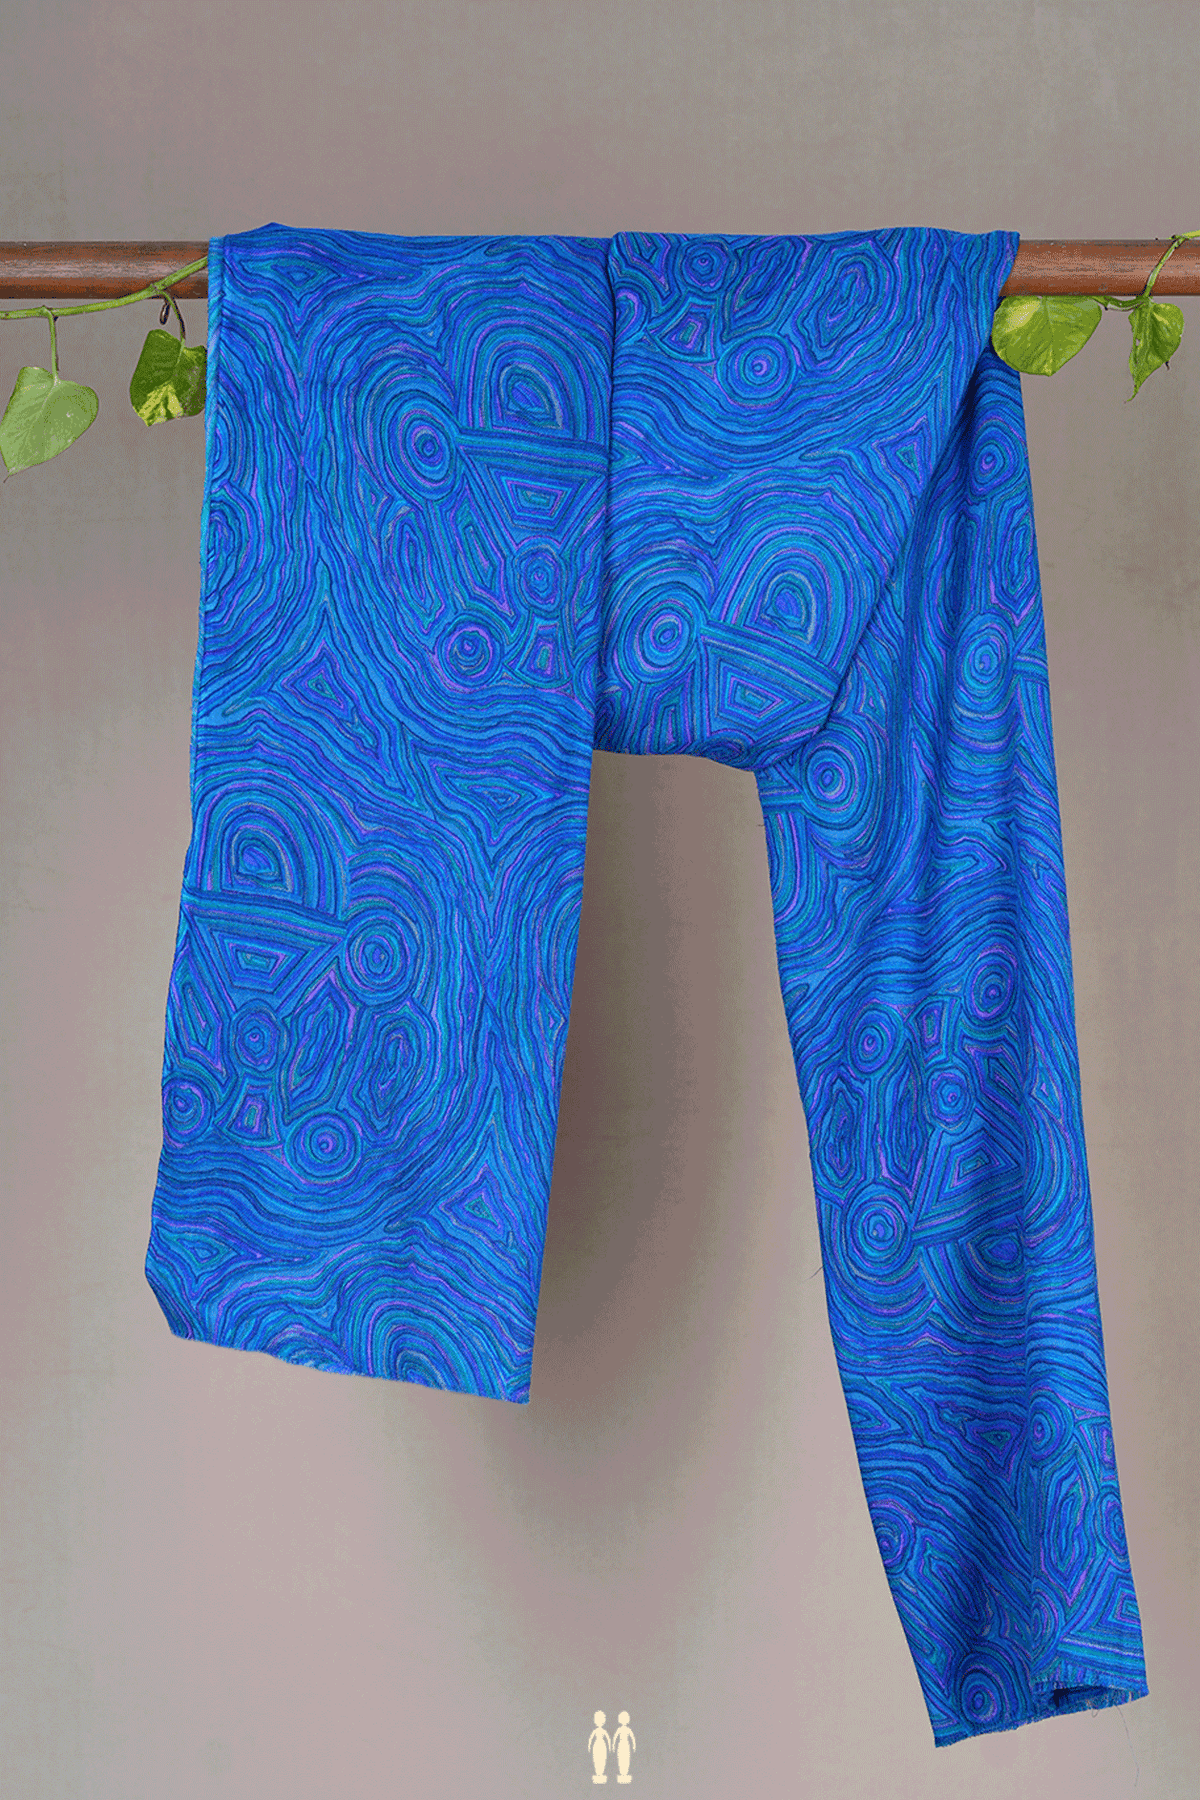 Allover Design Indigo Blue Woolen Shawl